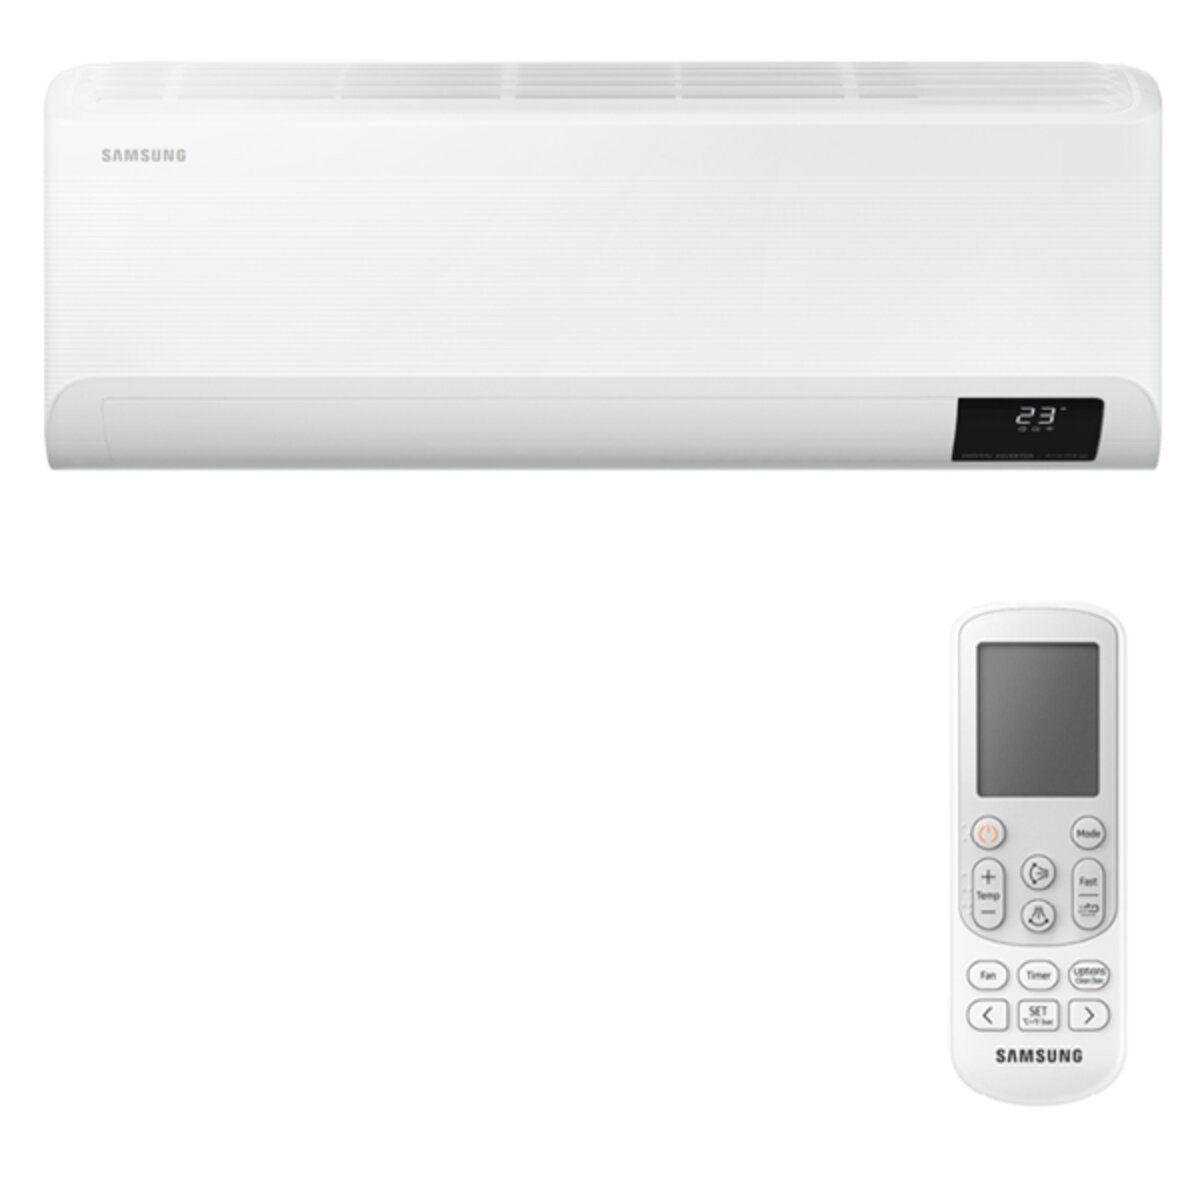 Samsung Cebu WLAN Klimaanlage Penta Split 7000 + 9000 + 9000 + 9000 + 9000 BTU Wechselrichter A++ WLAN Außengerät 10,0 kW